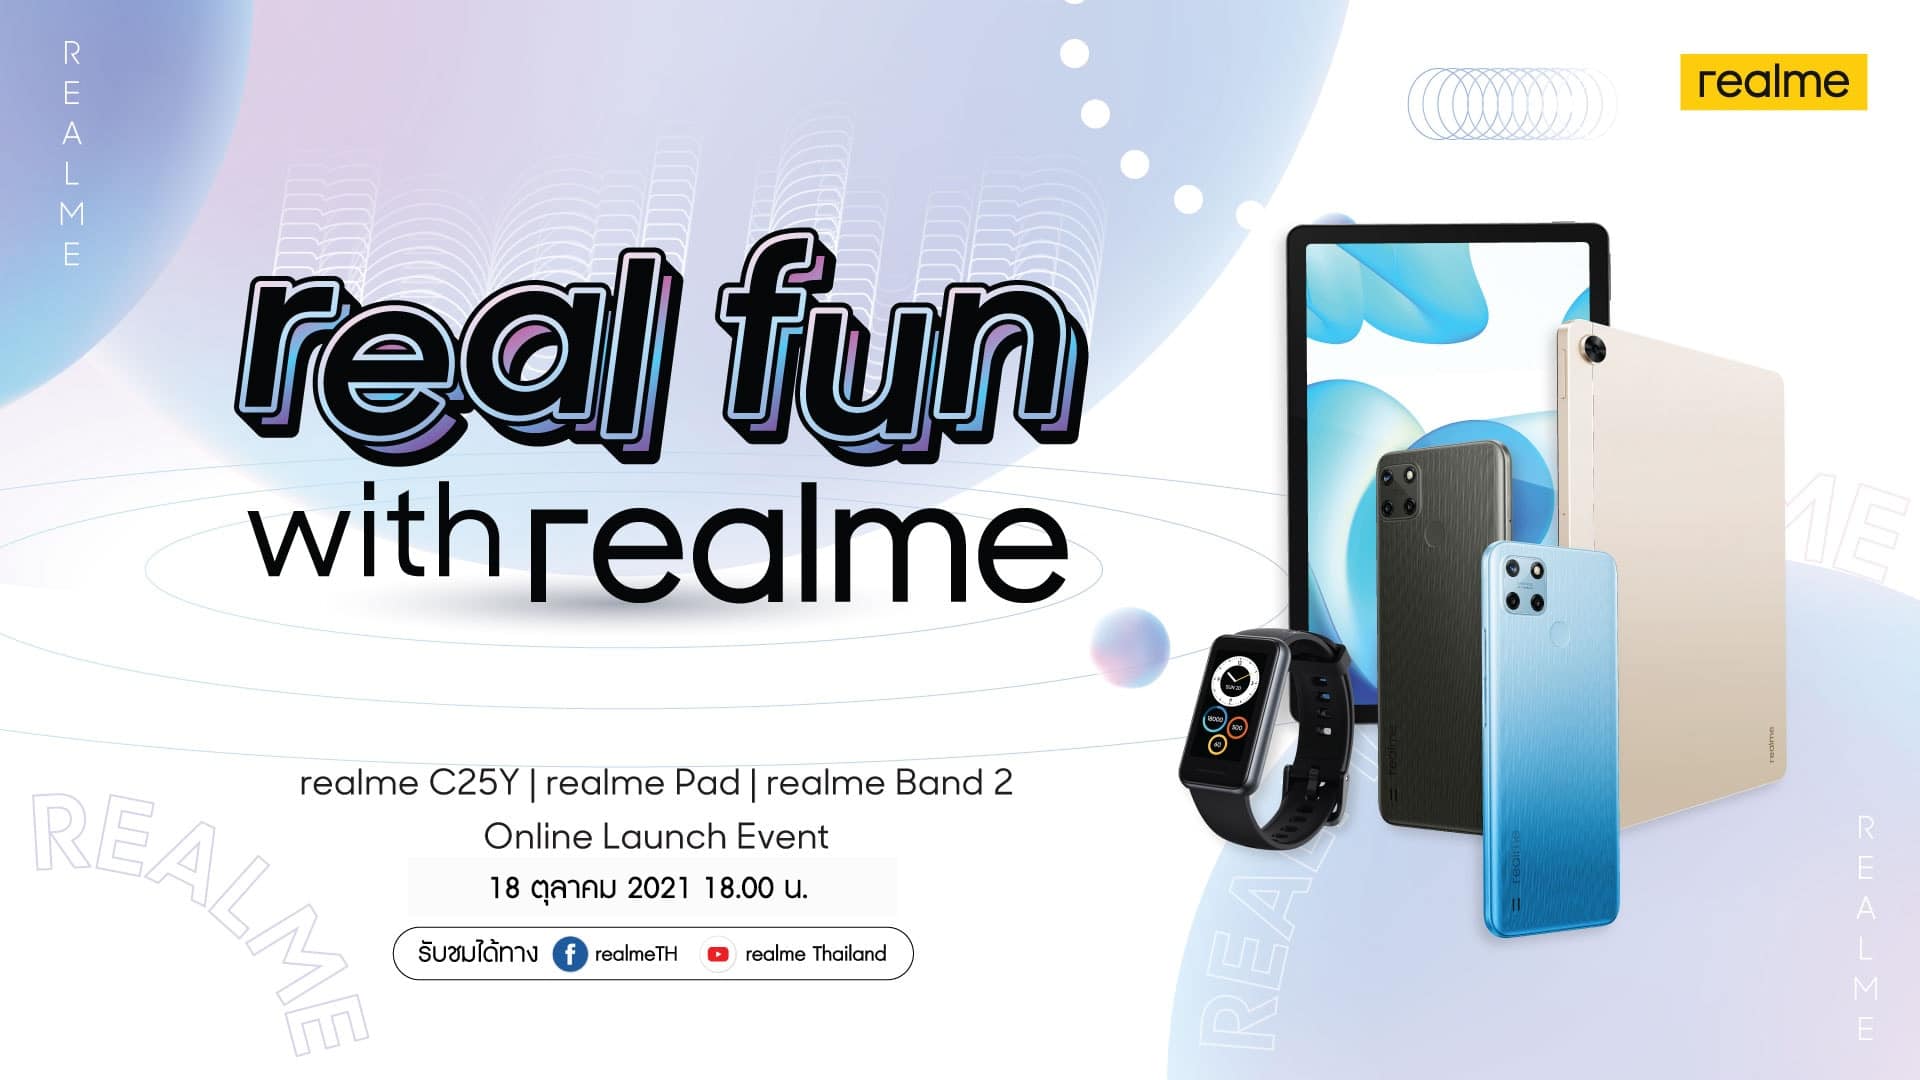 18 ตุลาคมนี้ realme ยกขบวนอุปกรณ์ AIoT และสมาร์ตโฟนรุ่นใหม่บุกเมืองไทย ชูไฮไลต์ realme Pad แท็บเล็ตรุ่นแรกในงาน real fun with realme 1